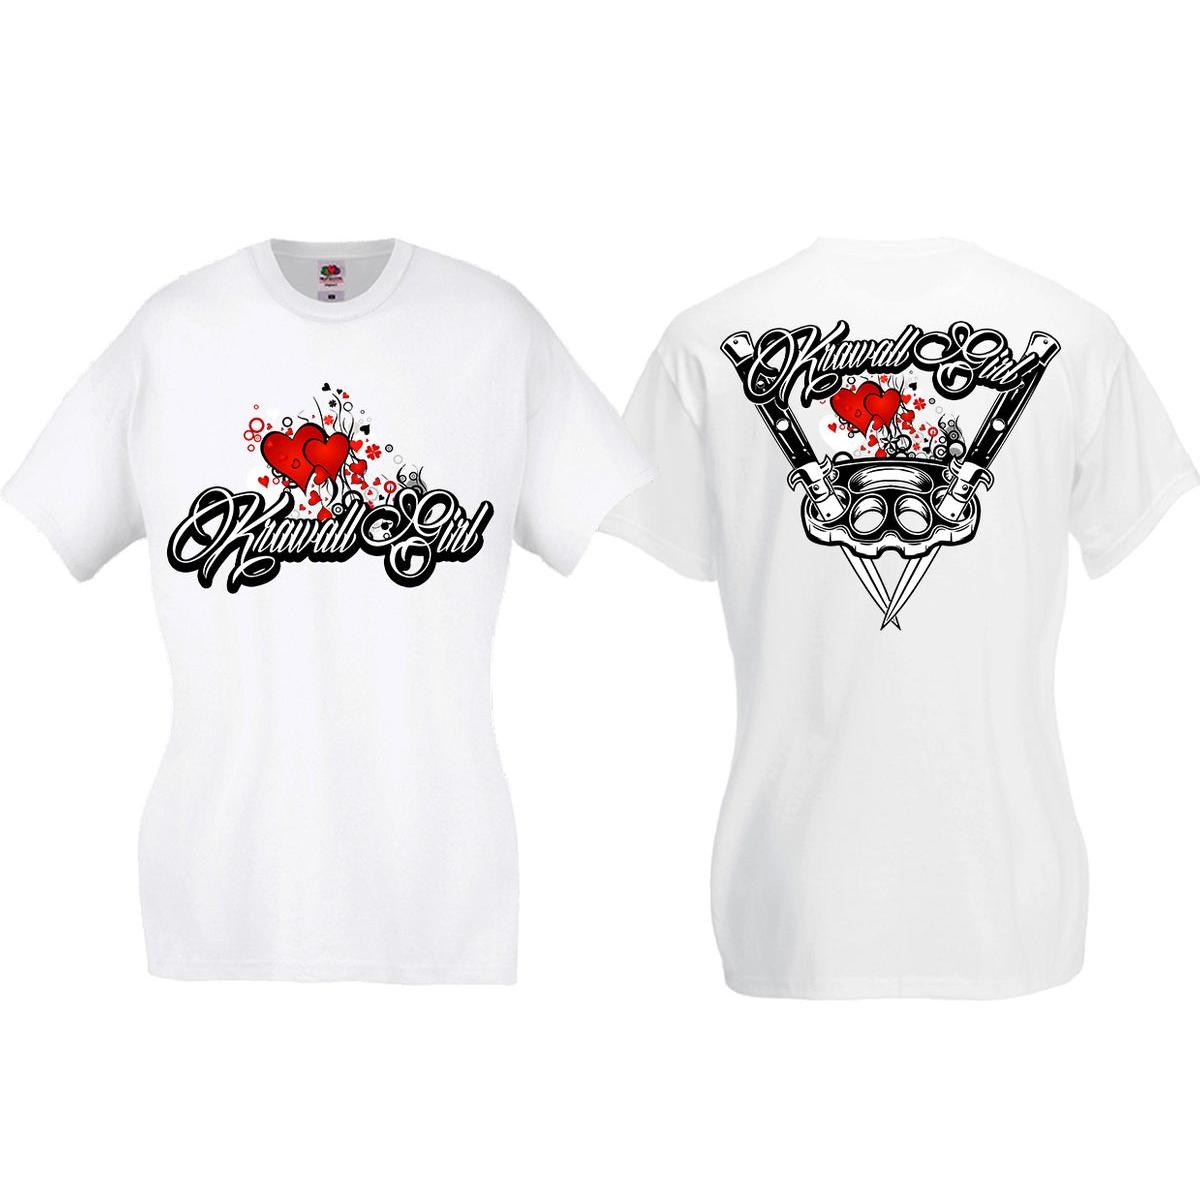 Krawallgirl - Schlagring Herz - Frauen T-Shirt - weiß